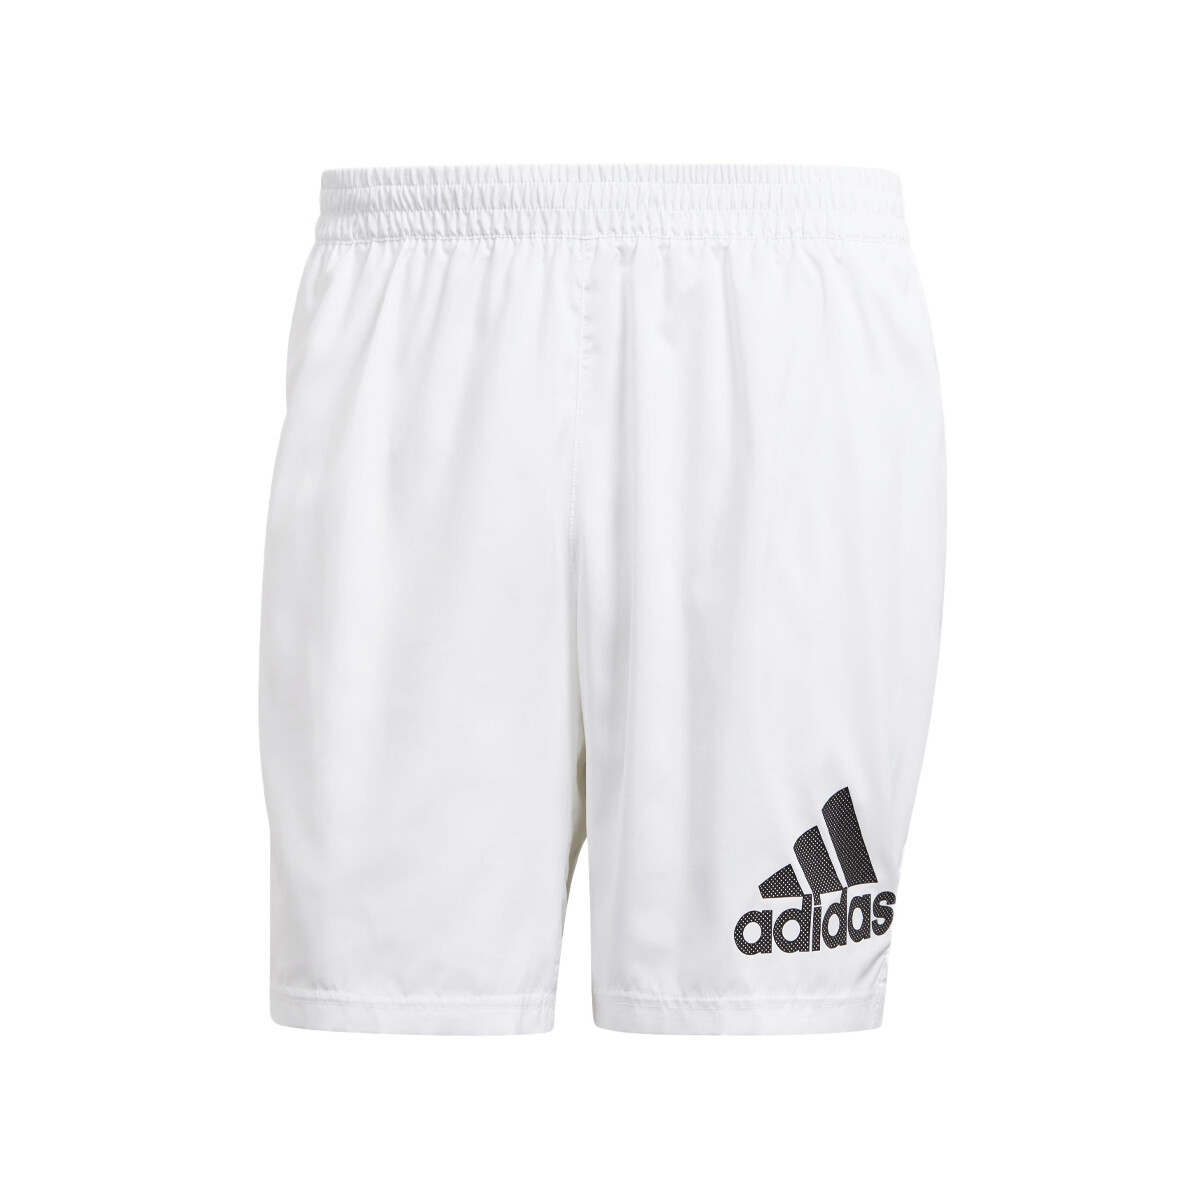 Textil Homem Shorts / Bermudas adidas Originals  Branco